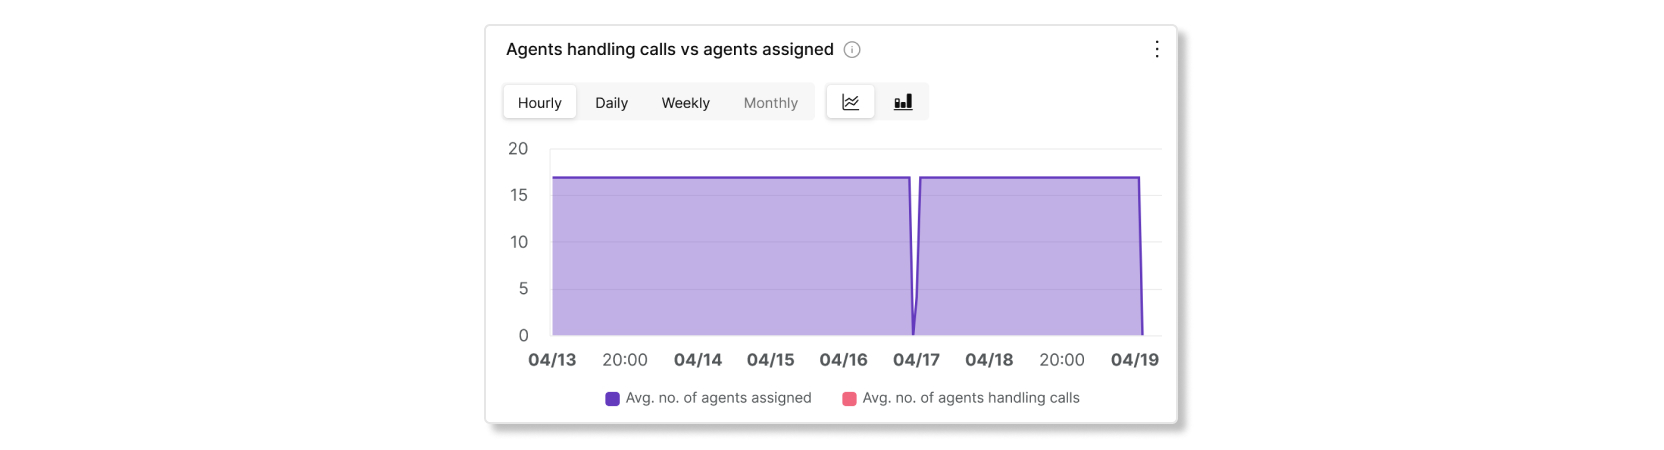 Agenti koji rukuju pozivima vs agentima dodeljenim grafikonima u pozivima u redu čekanja statistika analitike